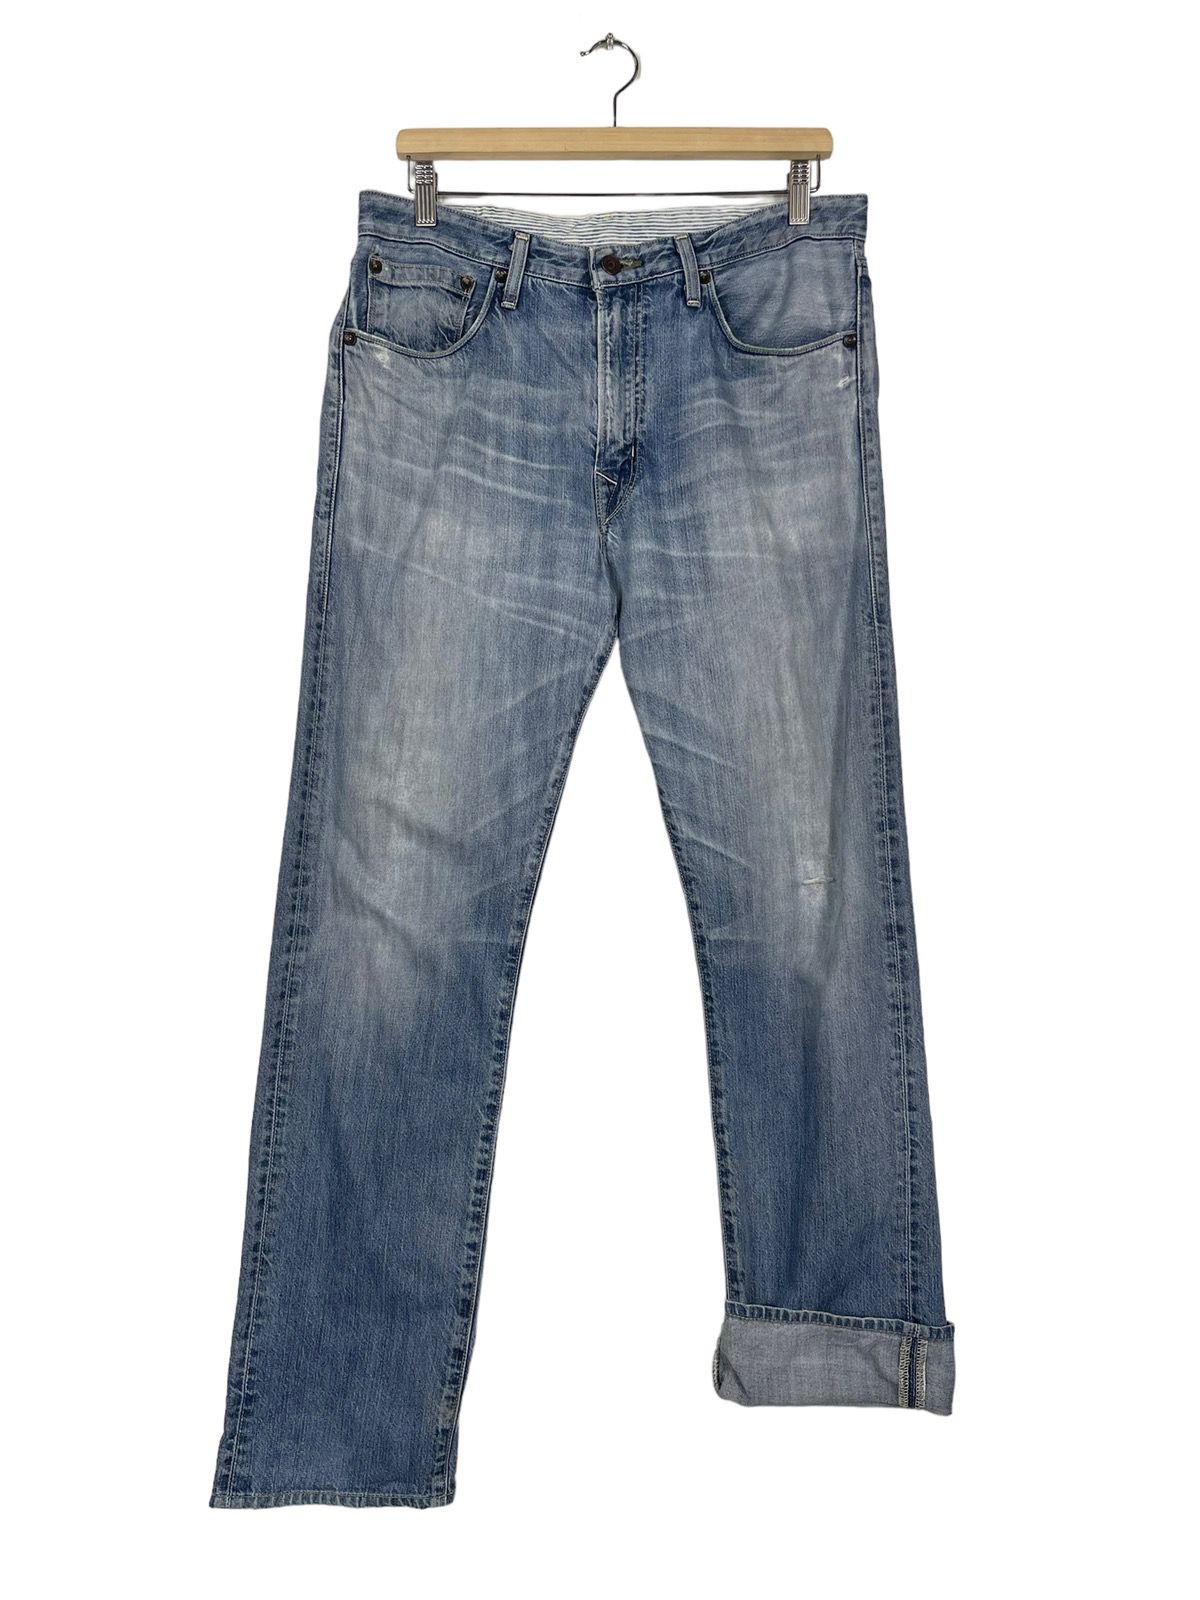 Vintage Levis Classic Lot 202 Jeans - 9